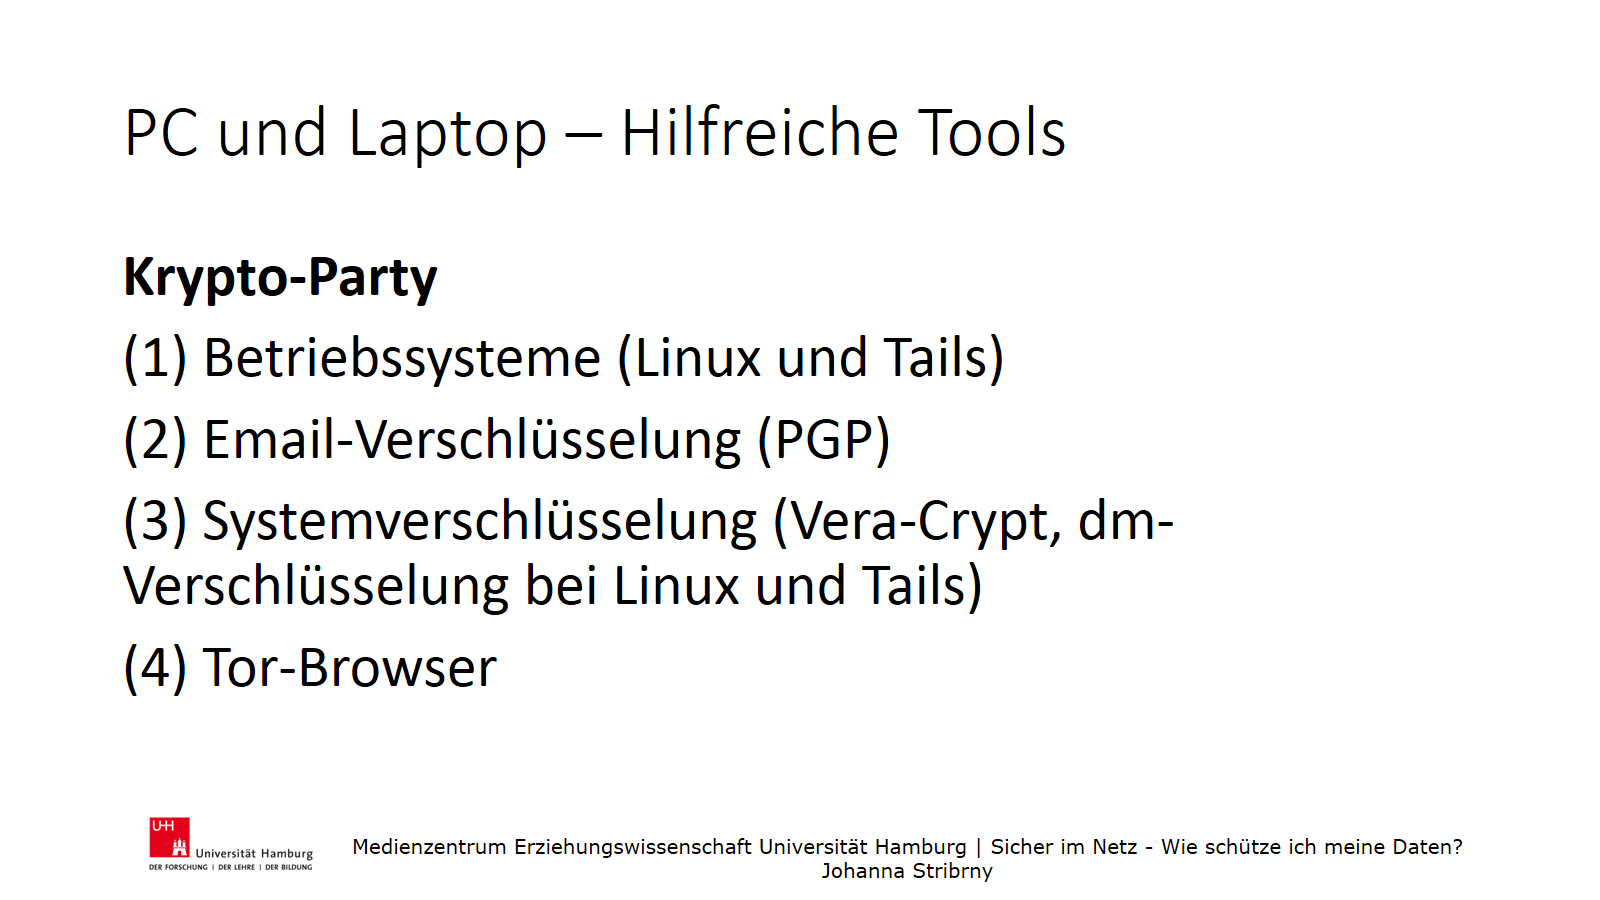 PC und Laptop – Hilfreiche Tools | Krypto-Party
 (1) Betriebssysteme (Linux und Tails)
(2) Email-Verschlüsselung (PGP)
(3) Systemverschlüsselung (Vera-Crypt, dm-Verschlüsselung bei Linux und Tails)
(4) Tor-Browser
